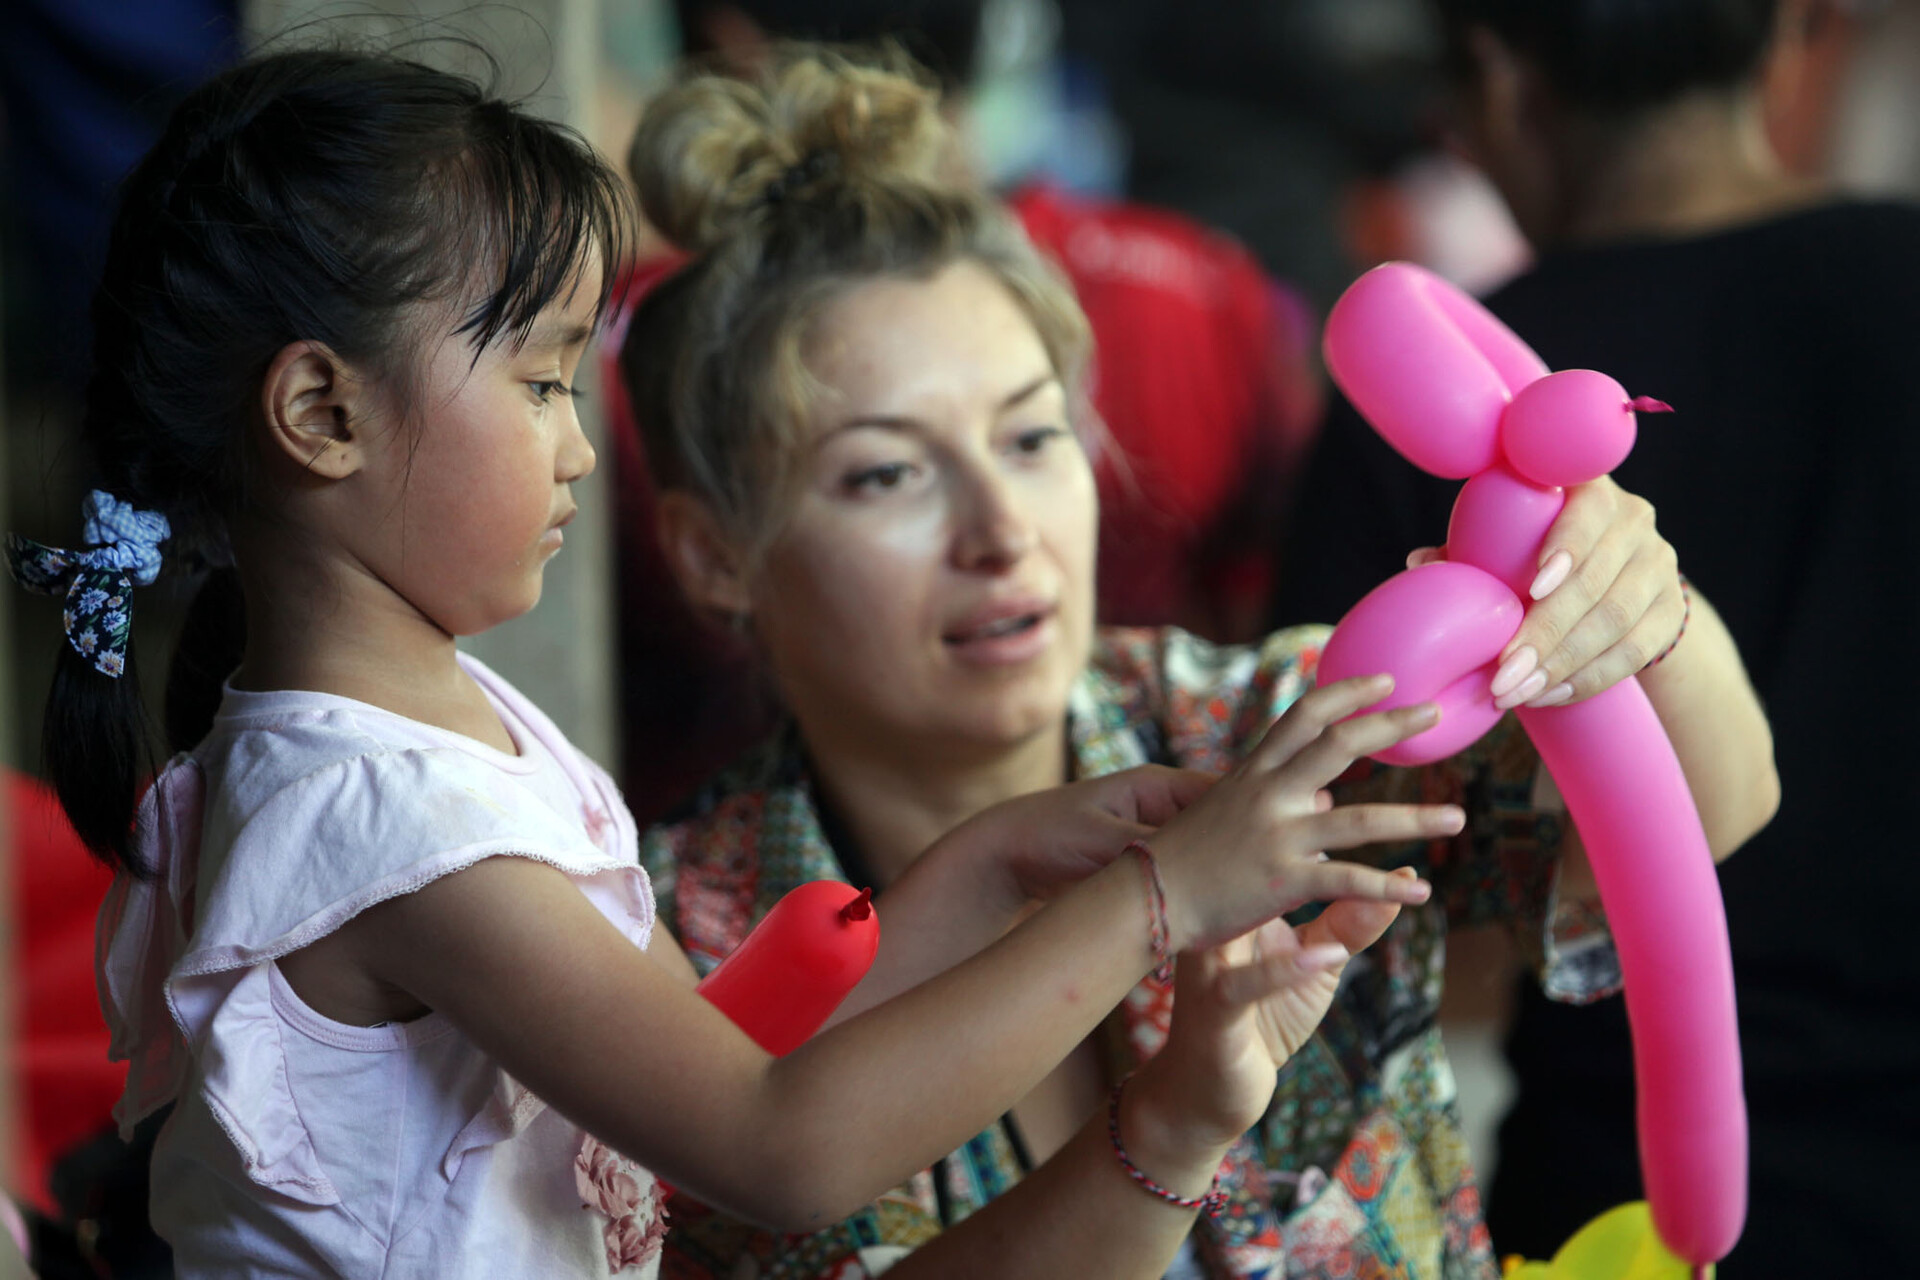 Sukarelawan mengajarkan seorang anak untuk membentuk balon.